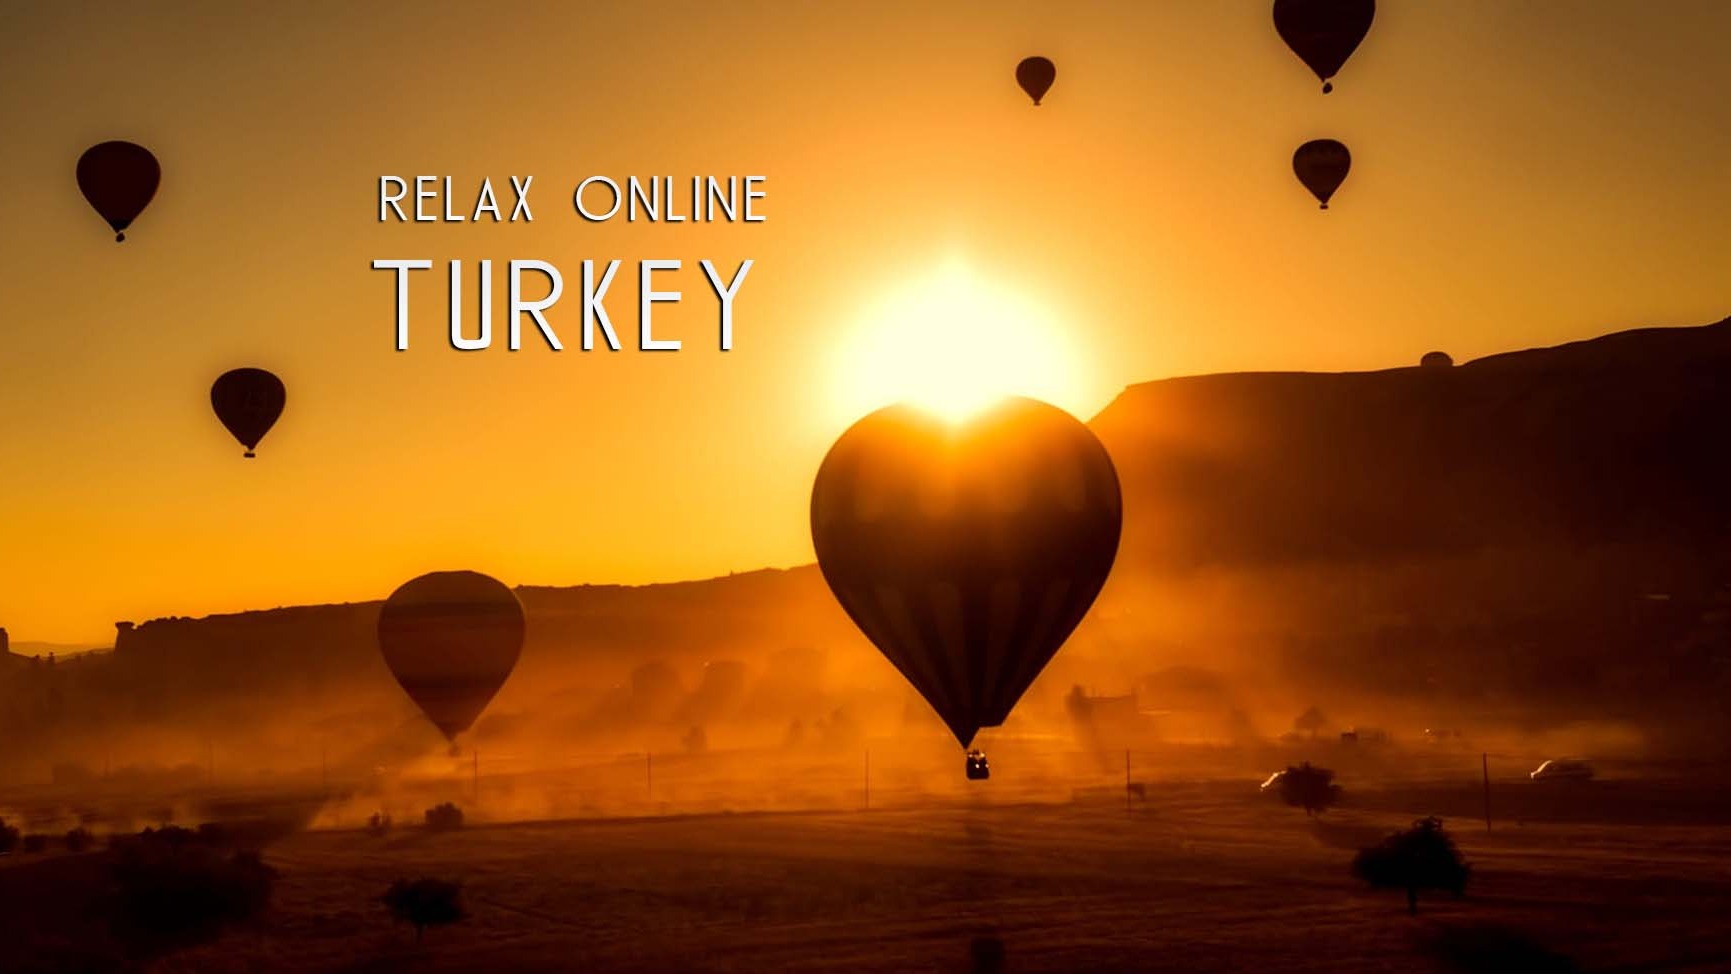 Путешествие по Турции, Достопримечательности Турции, история Турции, релакс онлайн, медитация, спа